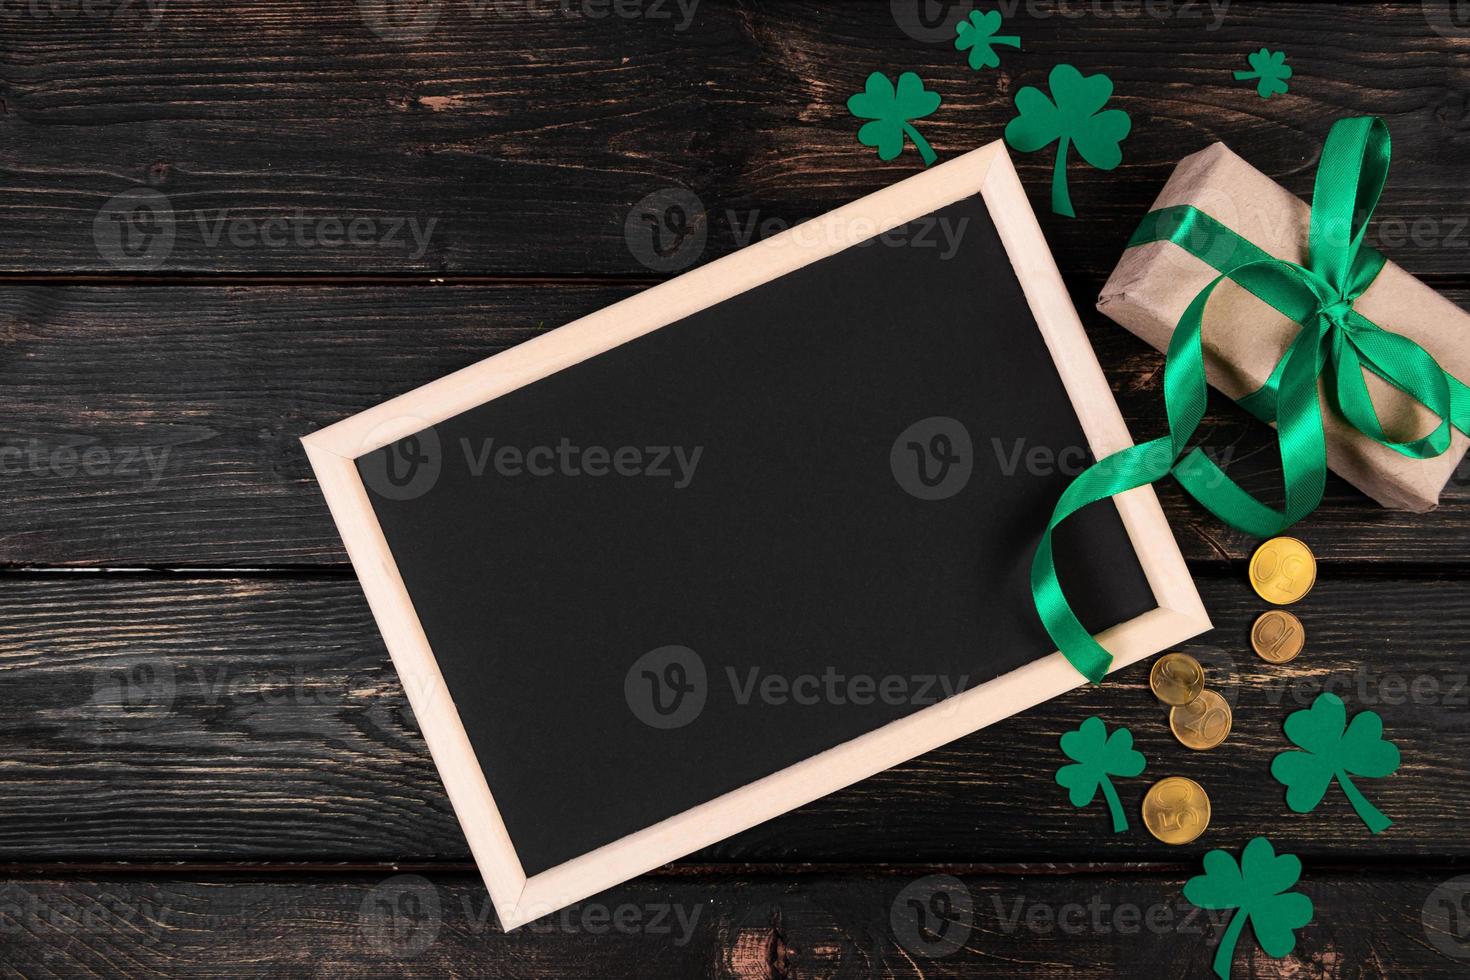 tömma ram för text, guld mynt, klöver vitklöver och gåva med grön band på en mörk trä- bakgrund. Bra tur symboler för st. Patricks dag. foto